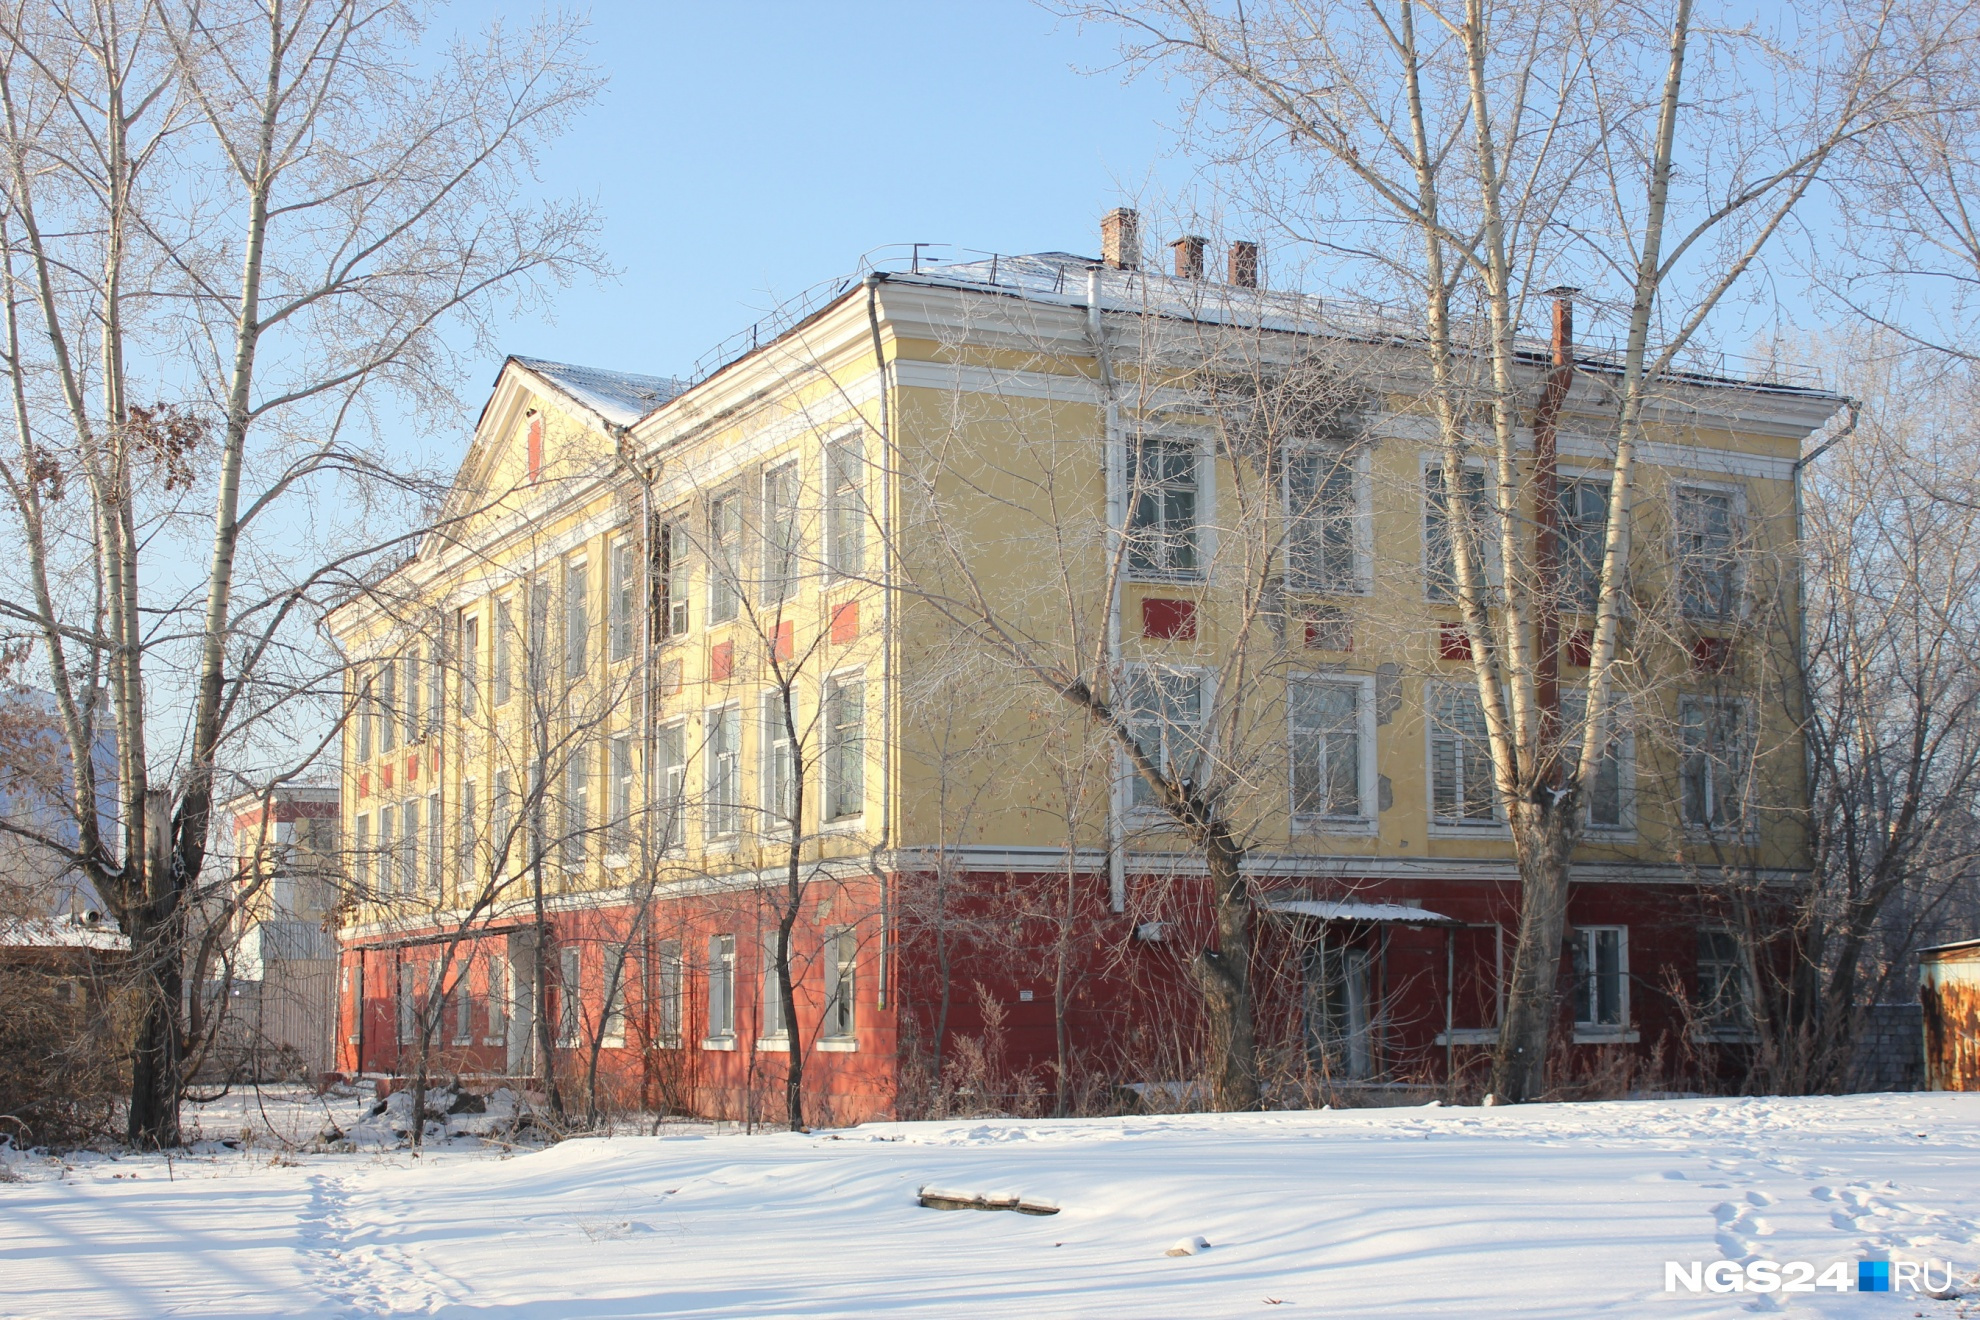 Это здание в районе КрасТЭЦ уже продано за 10,5 миллиона рублей